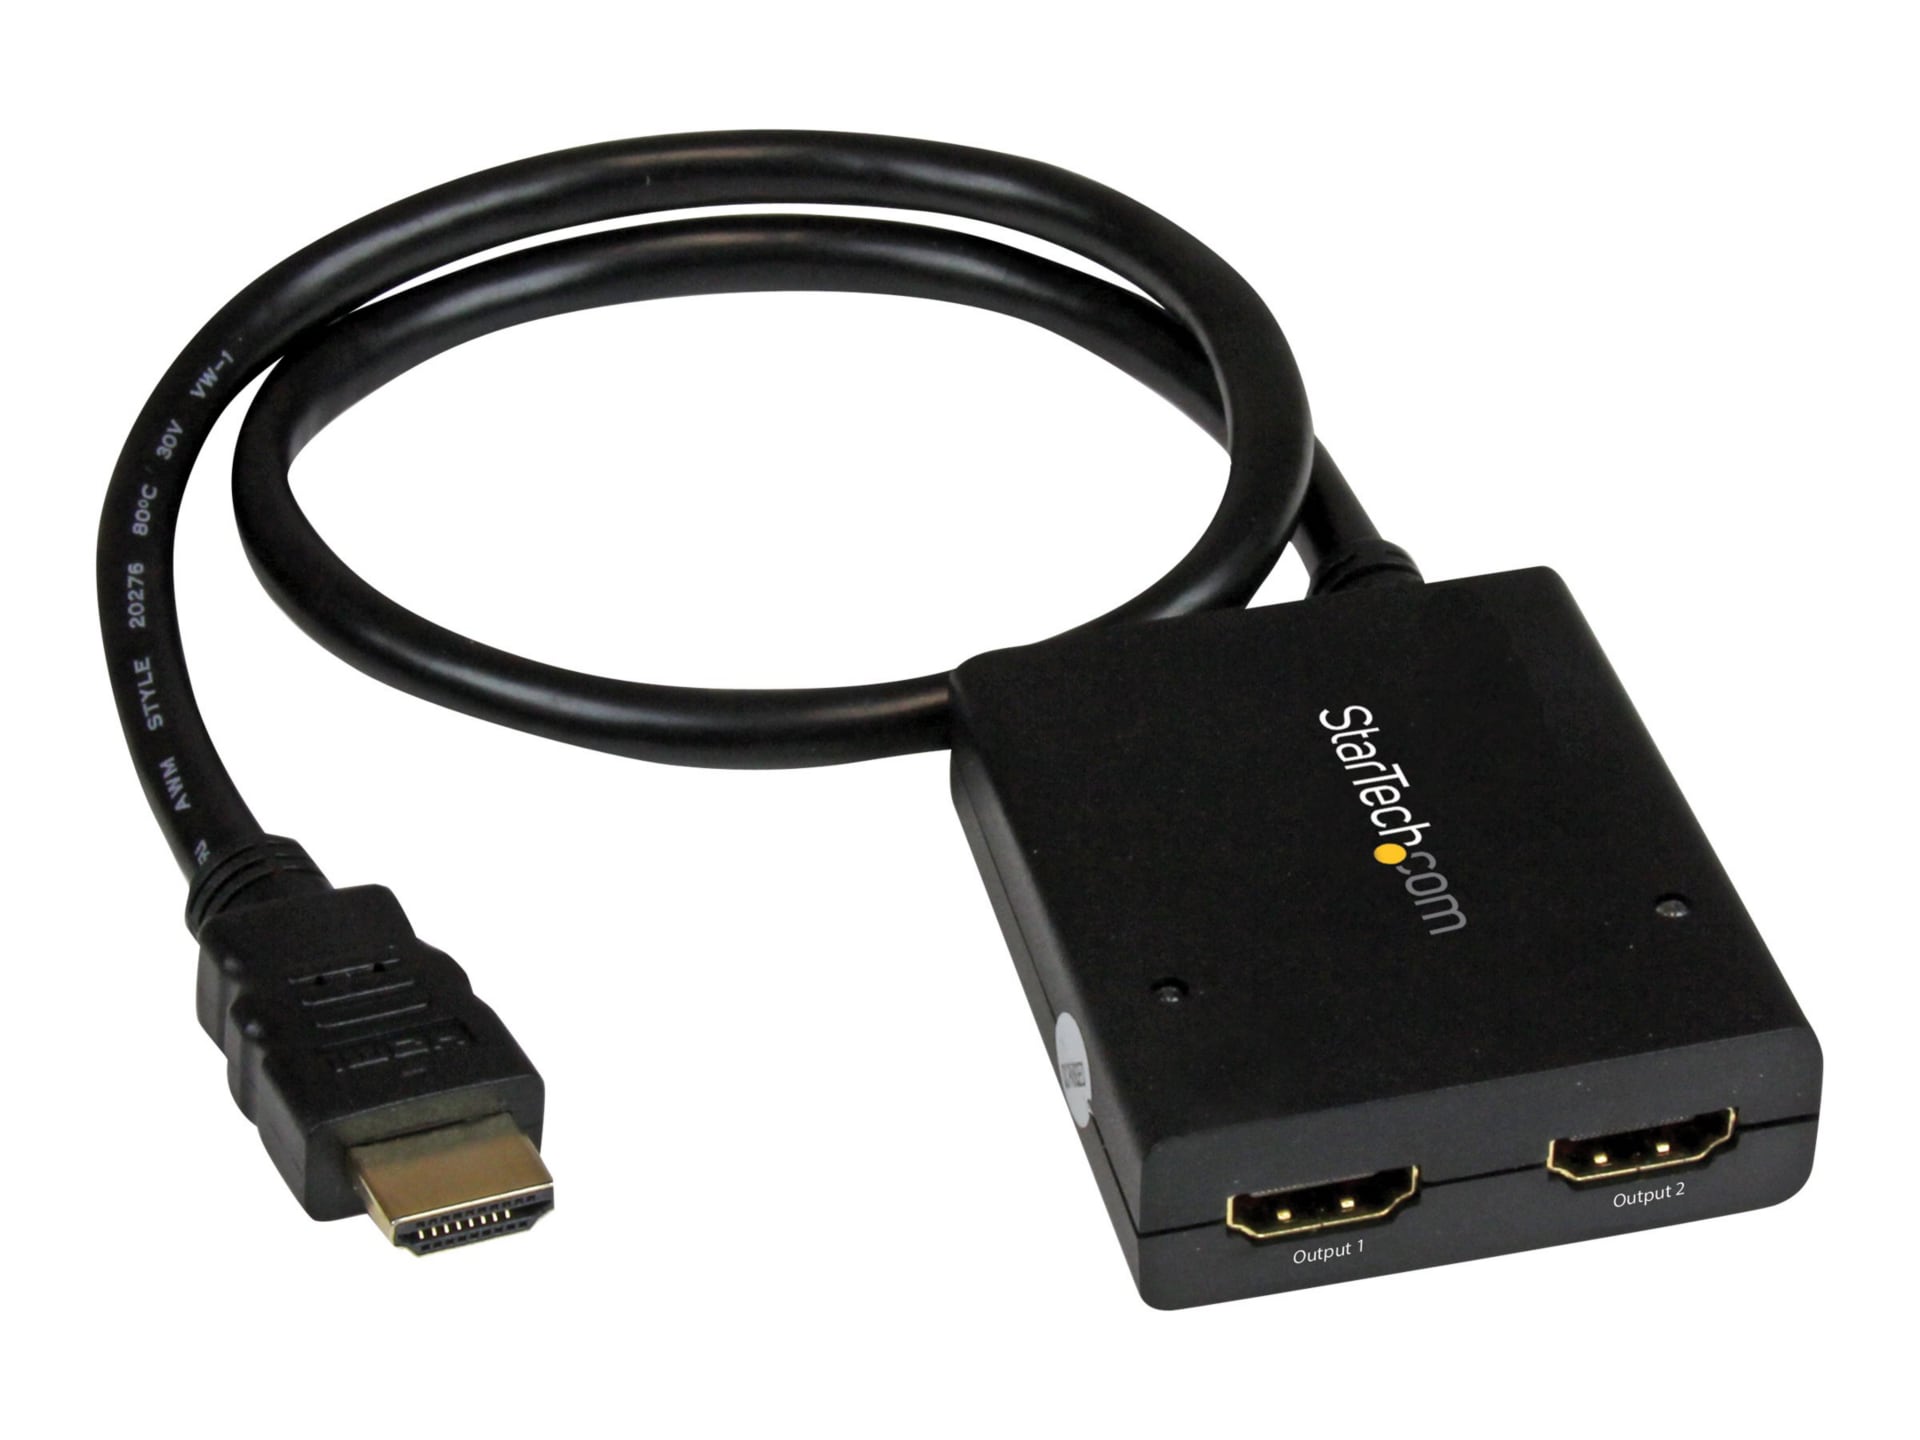 Anklage Læring Ledelse StarTech.com 4K HDMI 2-Port Video Splitter - USB or Power Adapter - 4K 30Hz  - ST122HD4KU - Audio & Video Cables - CDW.com